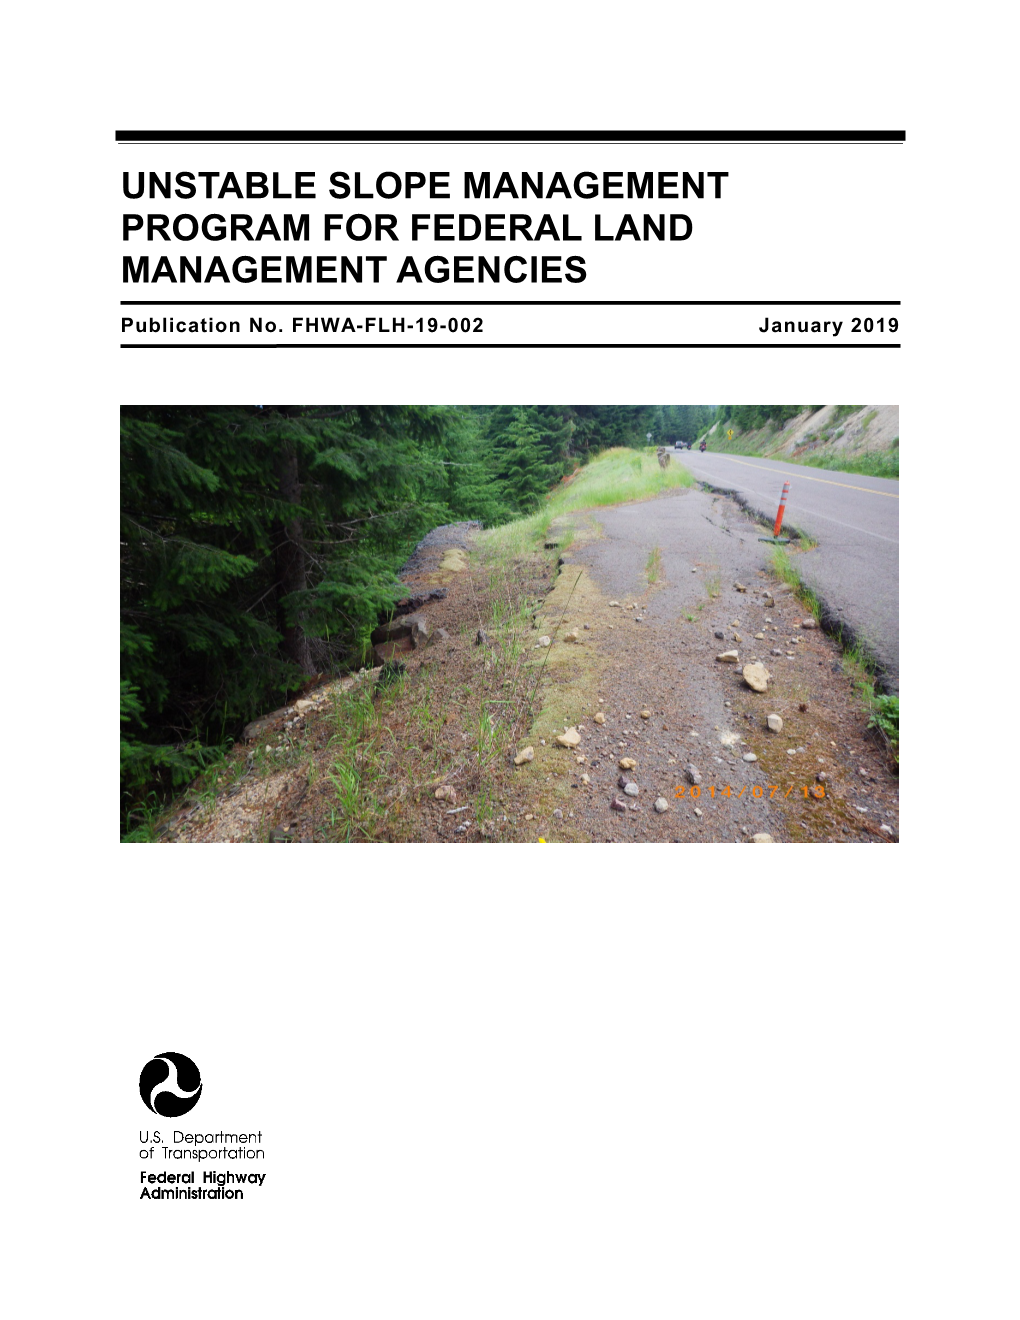 Unstable Slope Management Program for Federal Land Management Agencies